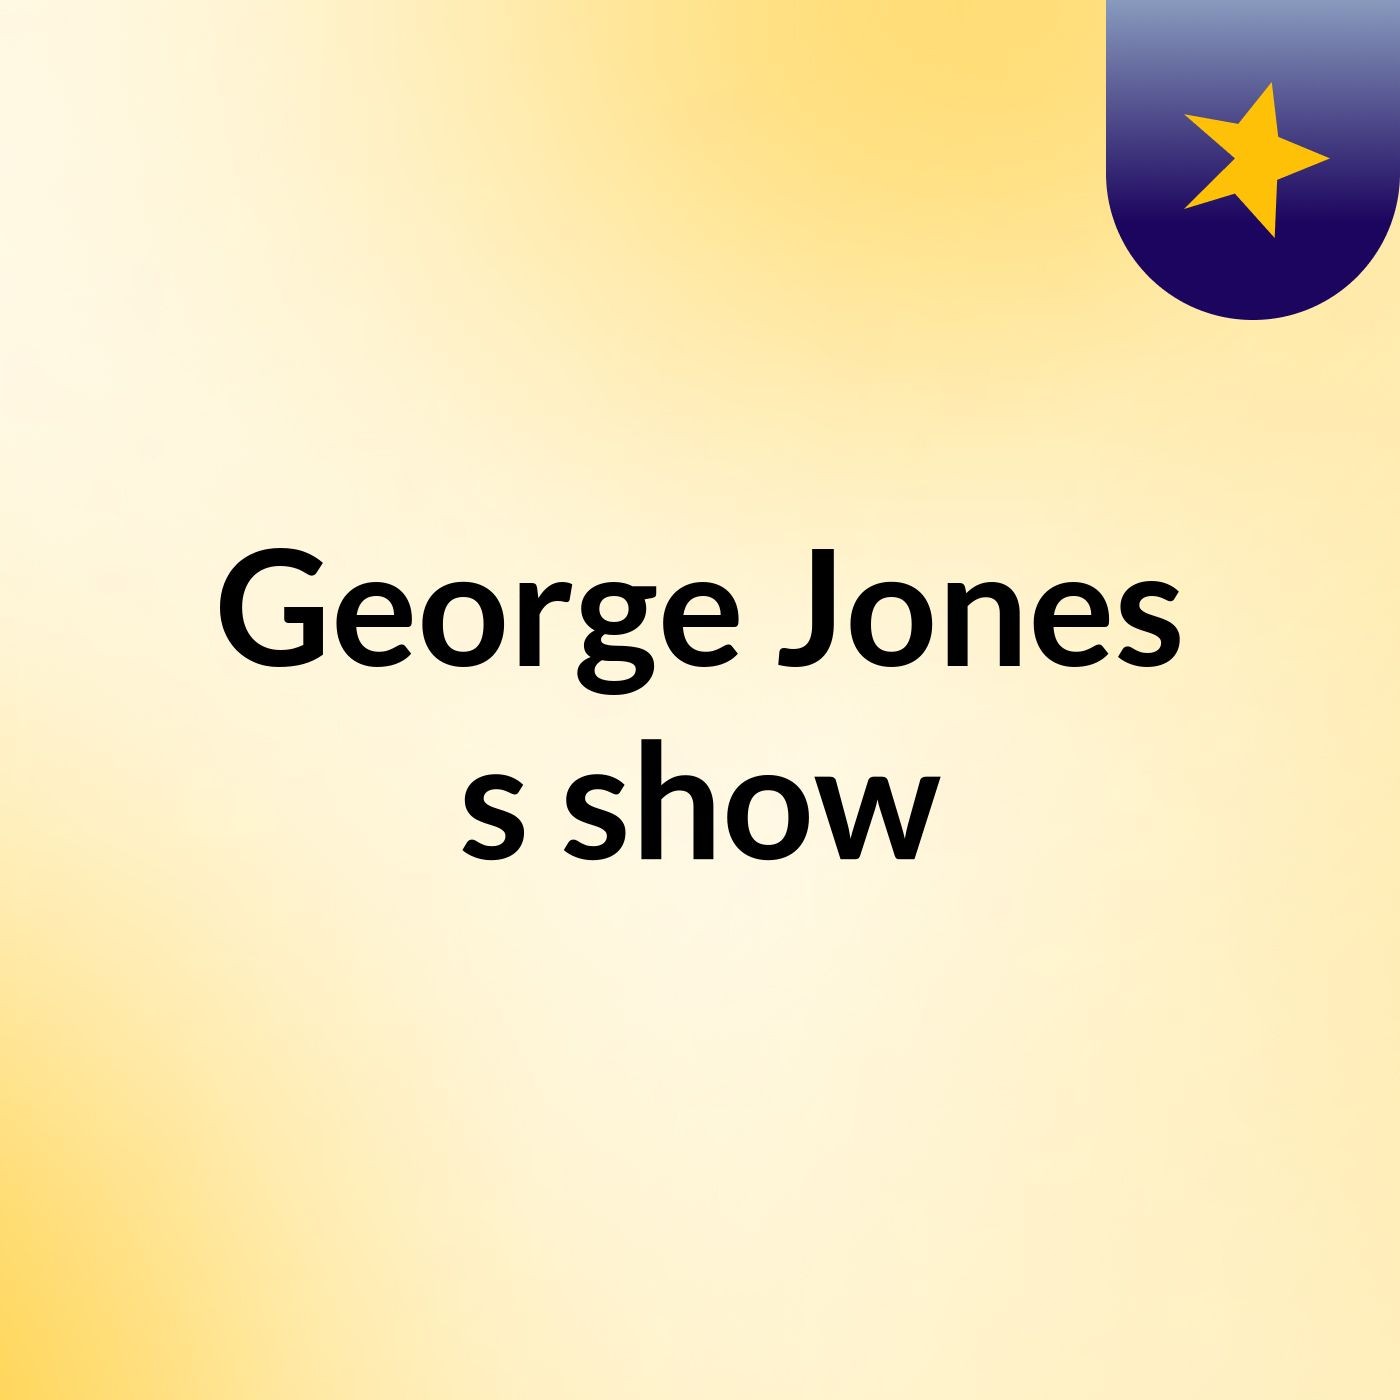 Episode 3 - George Jones's show